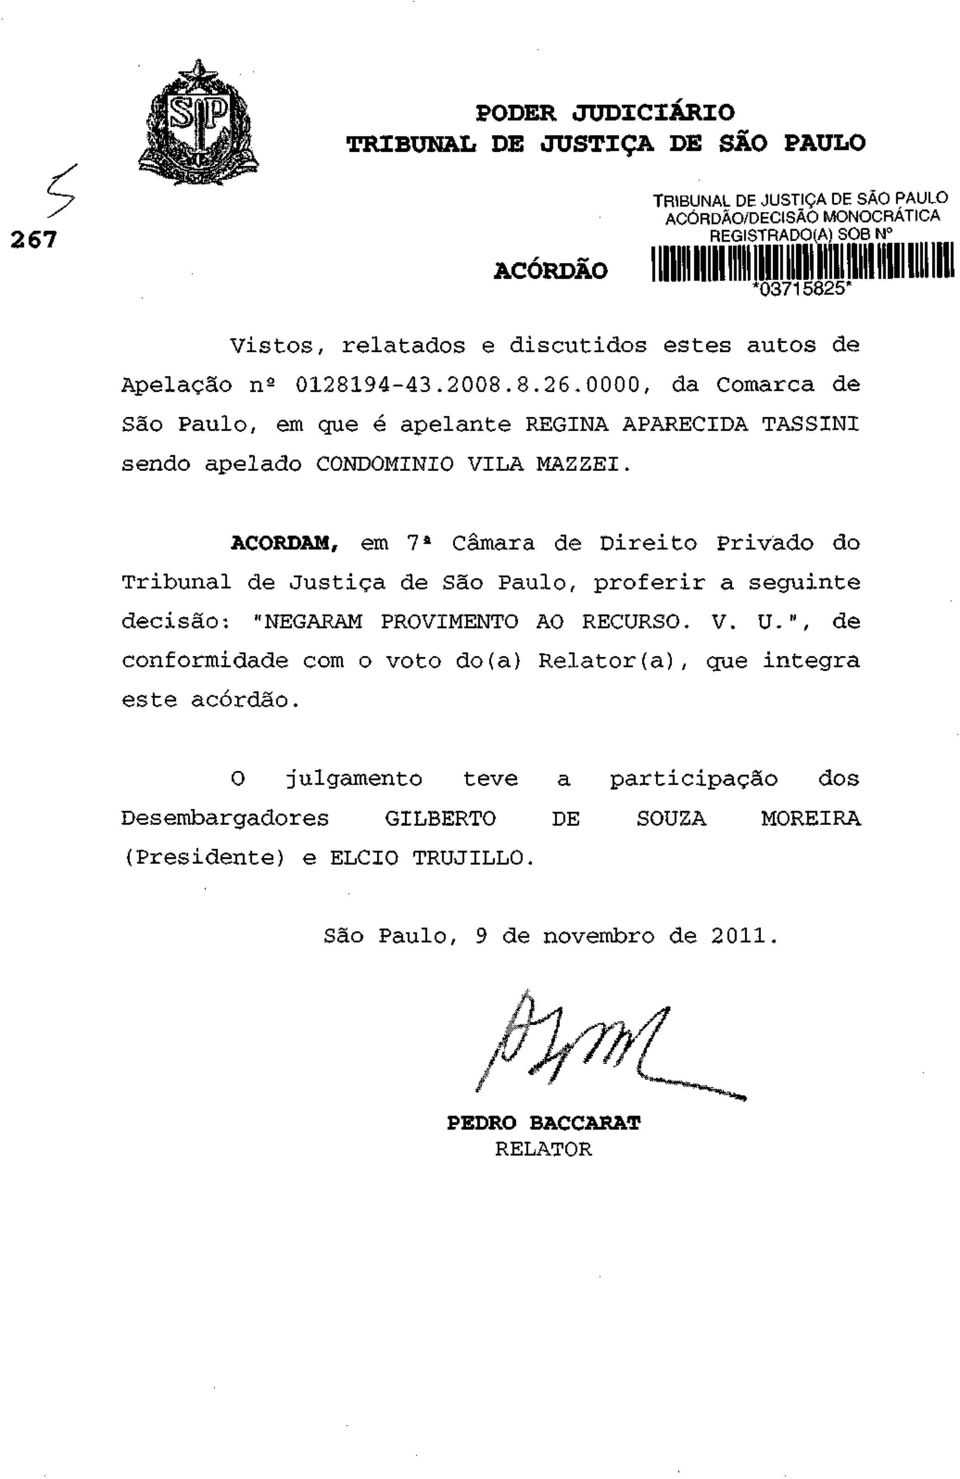 ACORDAM, em 7 a Câmara de Direito Privado do Tribunal de Justiça de São Paulo, proferir a seguinte decisão: "NEGARAM PROVIMENTO AO RECURSO. V. U.